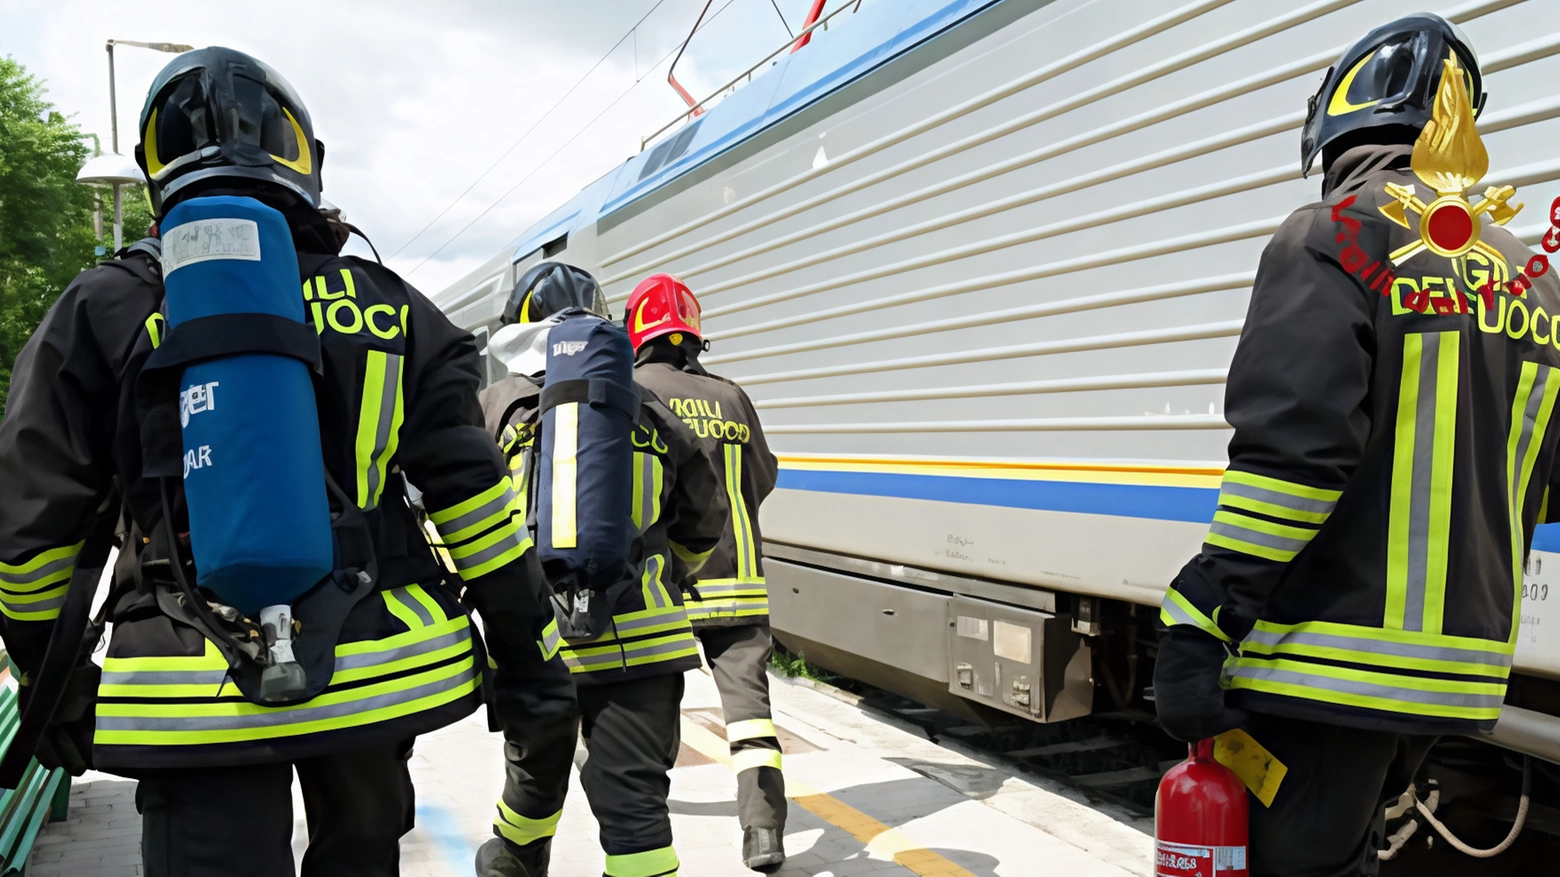 Sciopero generale per la sicurezza sul lavoro: incendio locomotore a Belgioioso causa sospensioni sulla linea Pavia-Codogno. Treni cancellati, disagi per i pendolari. Vigili del fuoco sul posto, nessun ferito.